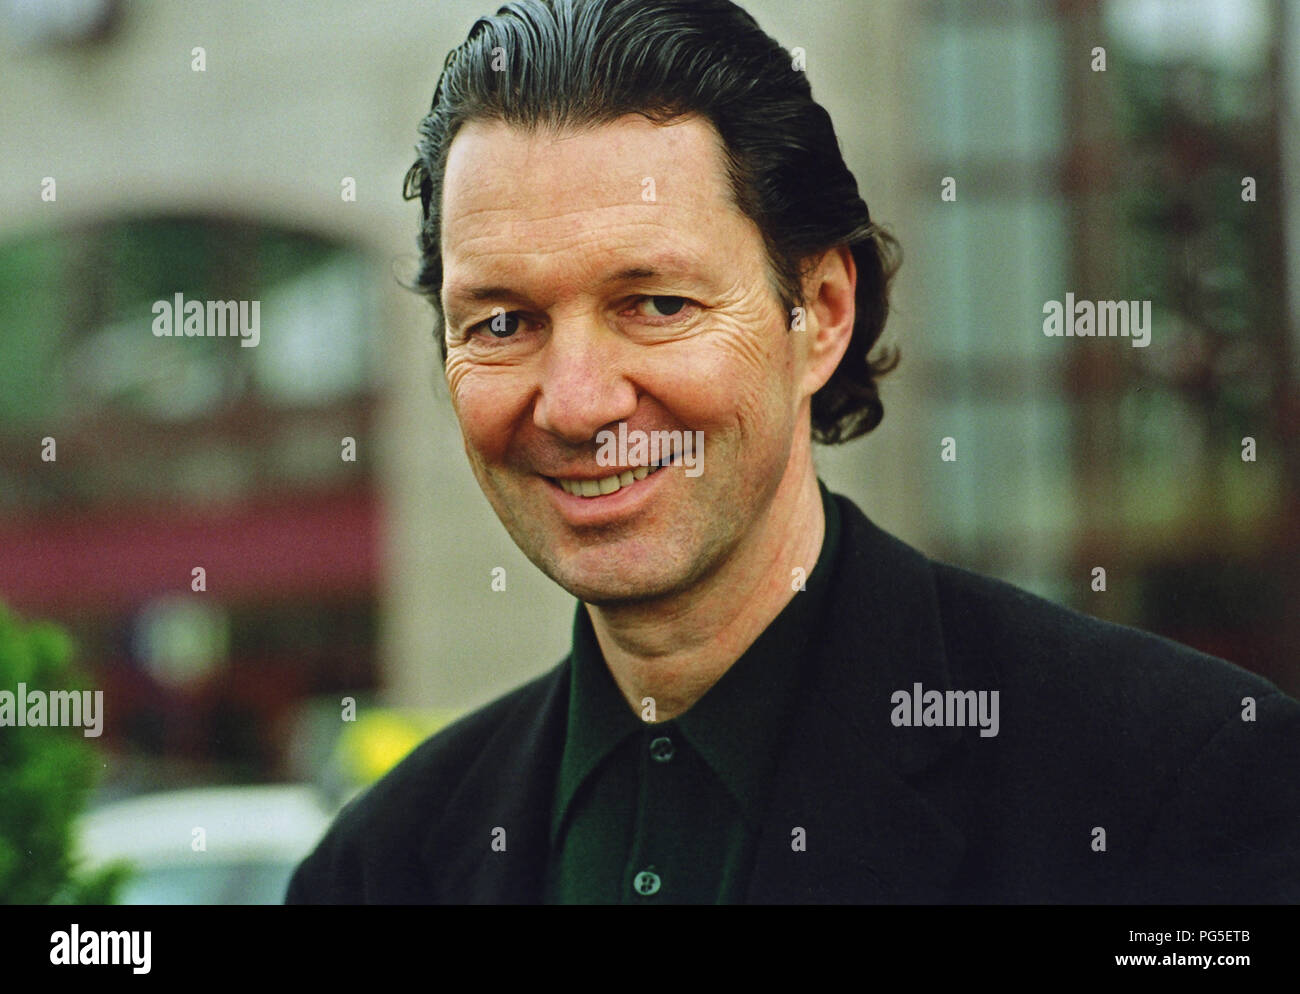 Swiss writer Martin Suter. Stock Photo